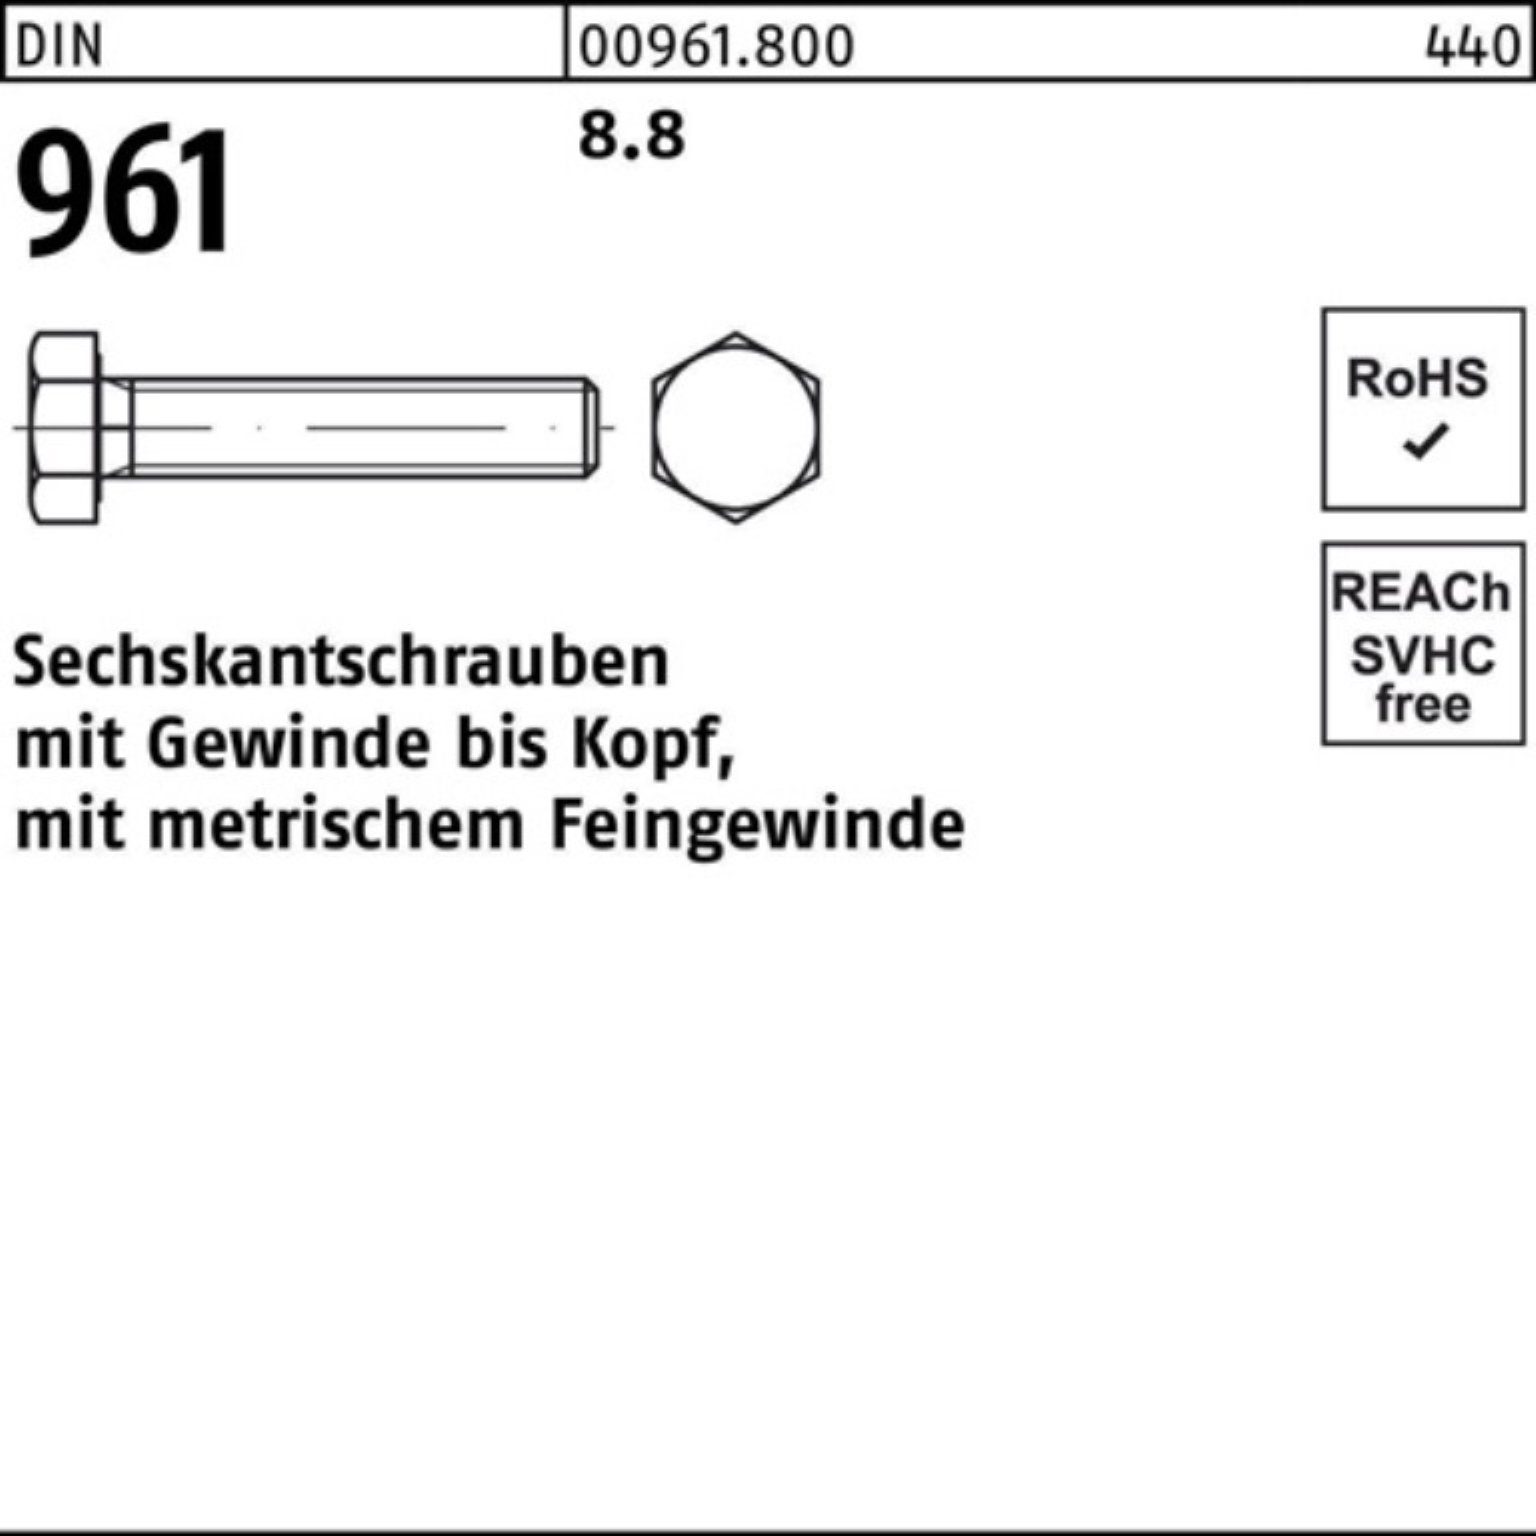 Reyher Sechskantschraube 100er Stück 961 VG Sechskantschraube 961 DIN Pack DIN 1 8.8 M24x2x150